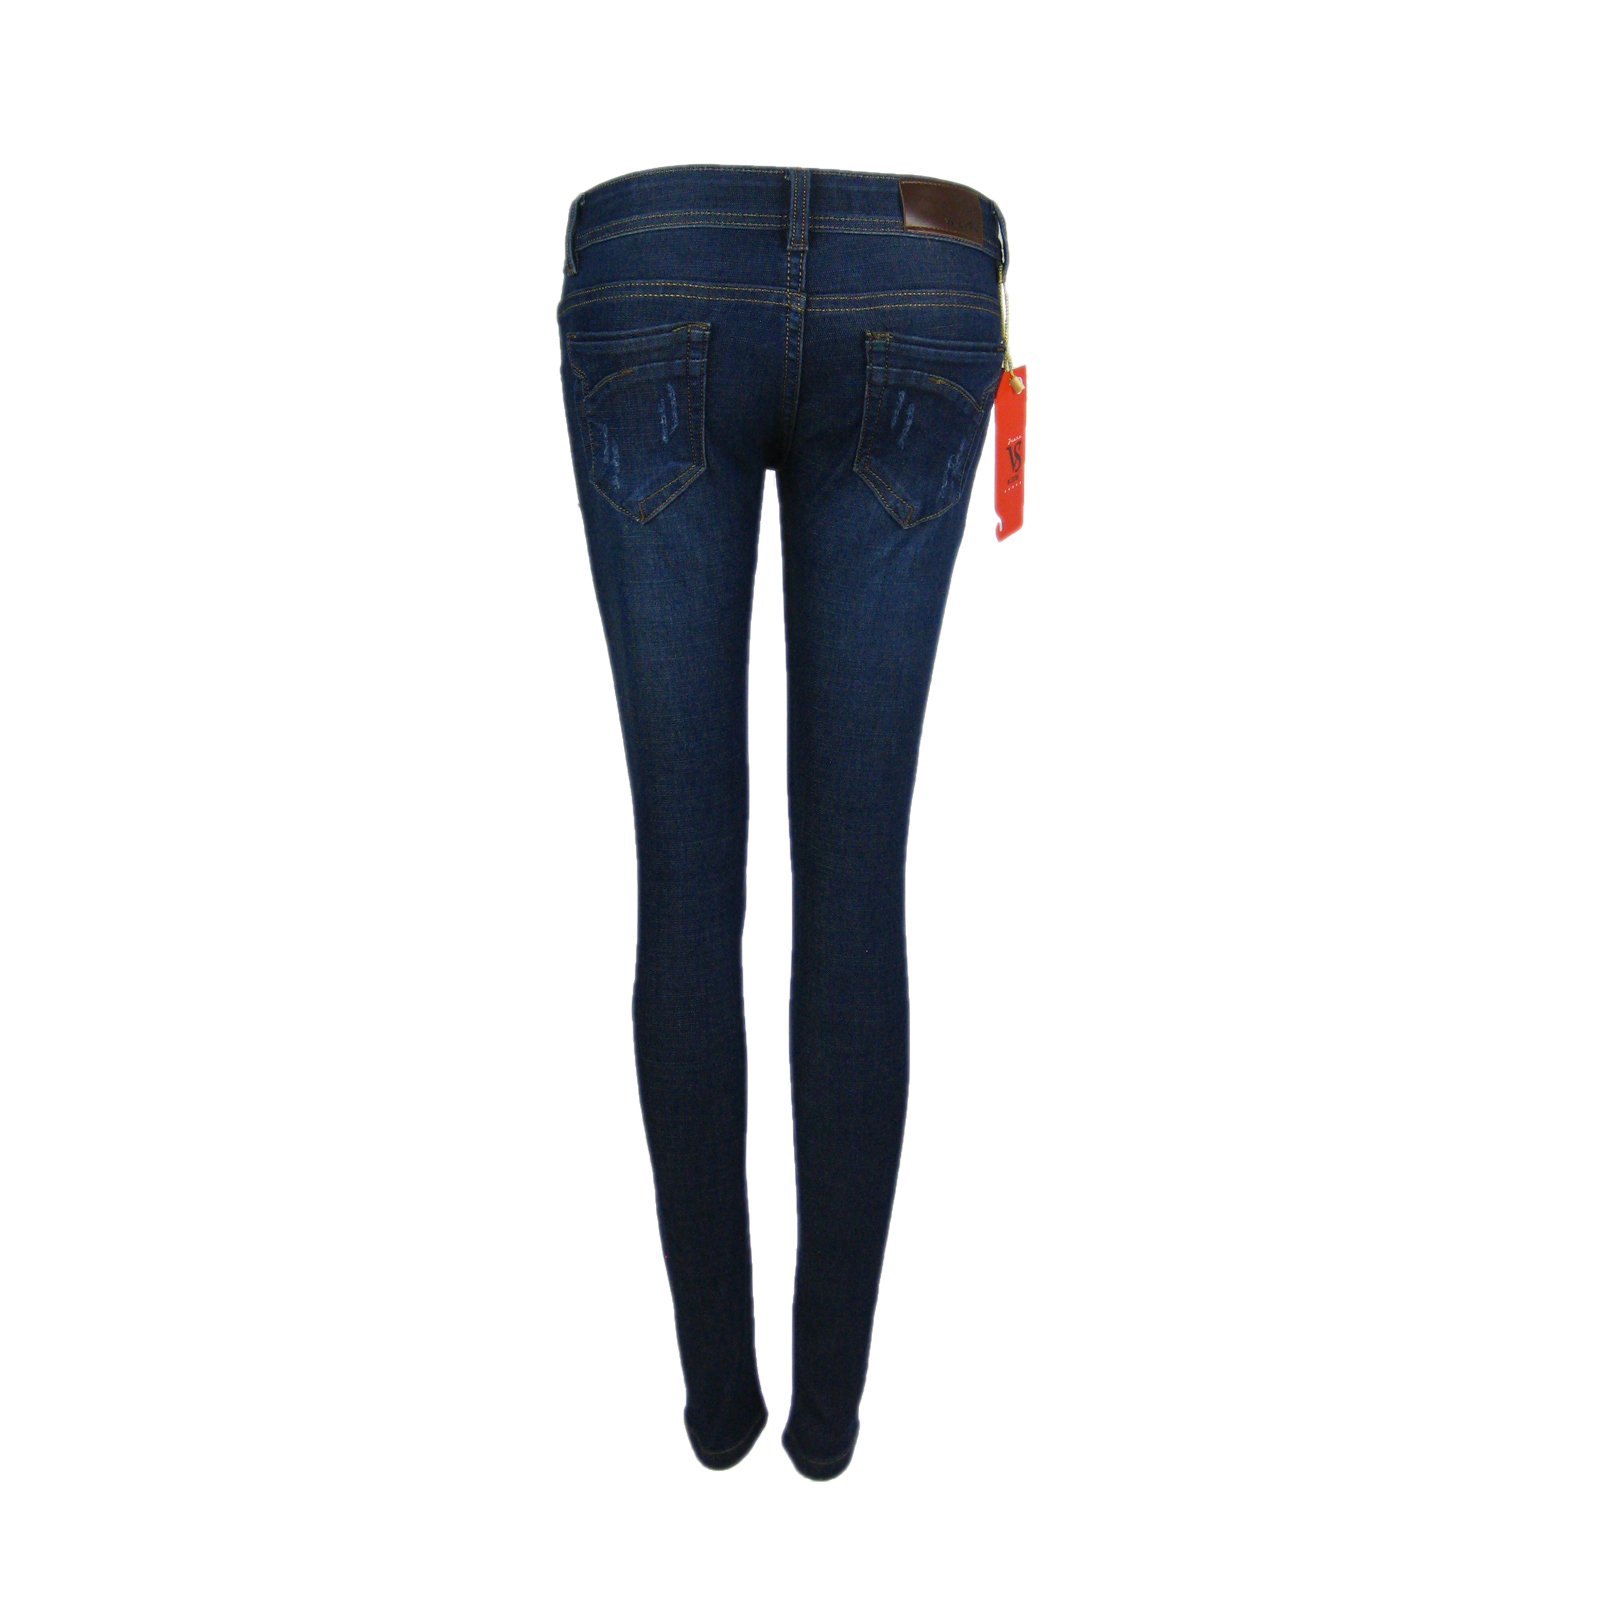 Quần jeans nữ QDN455 4.